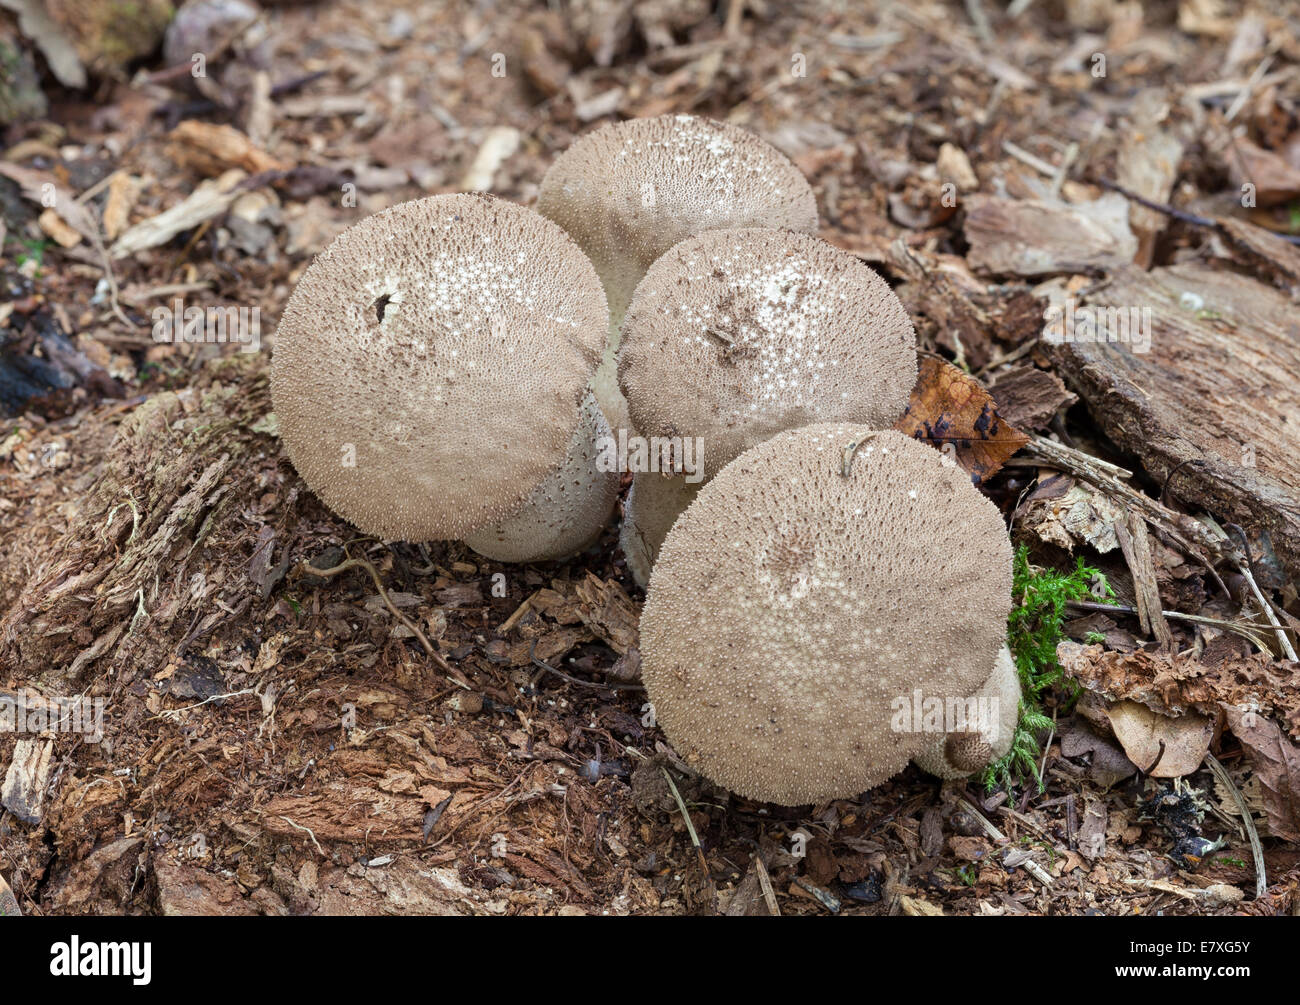 Common puffball mushrooms Stock Photo